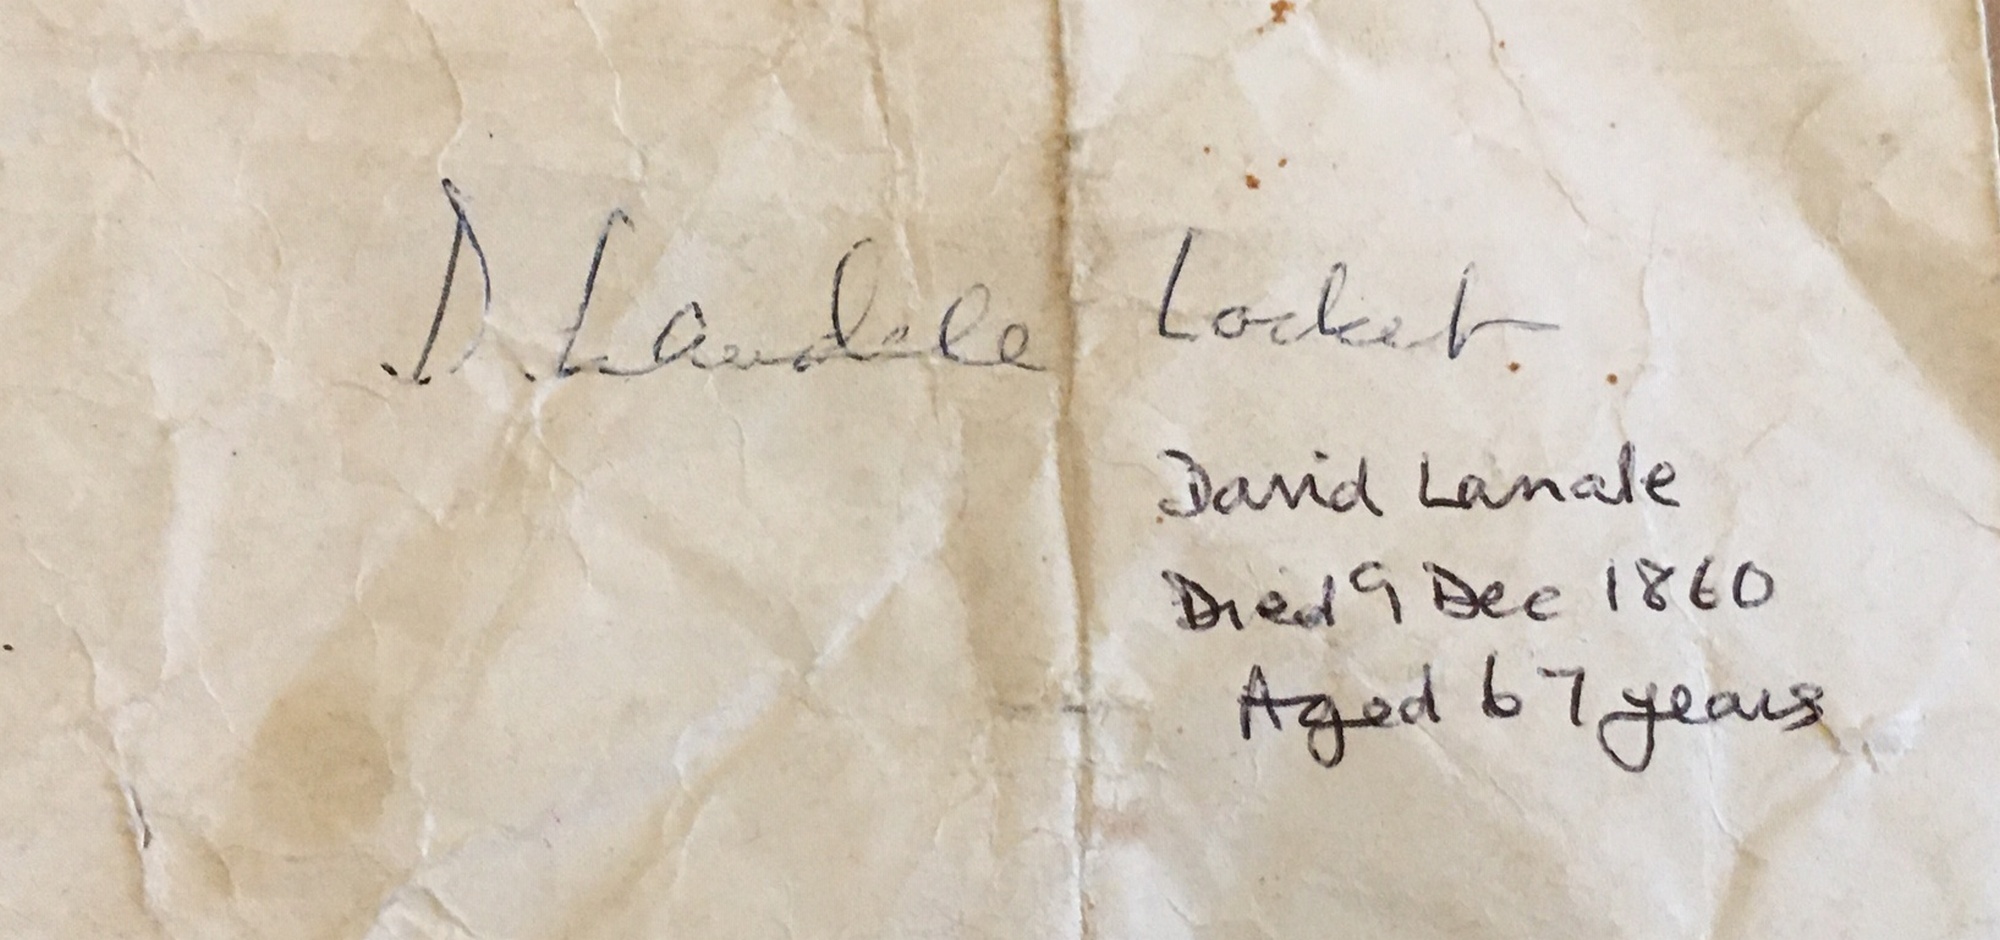 Last Duel in Scotland 1826 Metal Locket of Death of David Landale in 1860 - 28mm with loop x 17mm. - Image 4 of 4